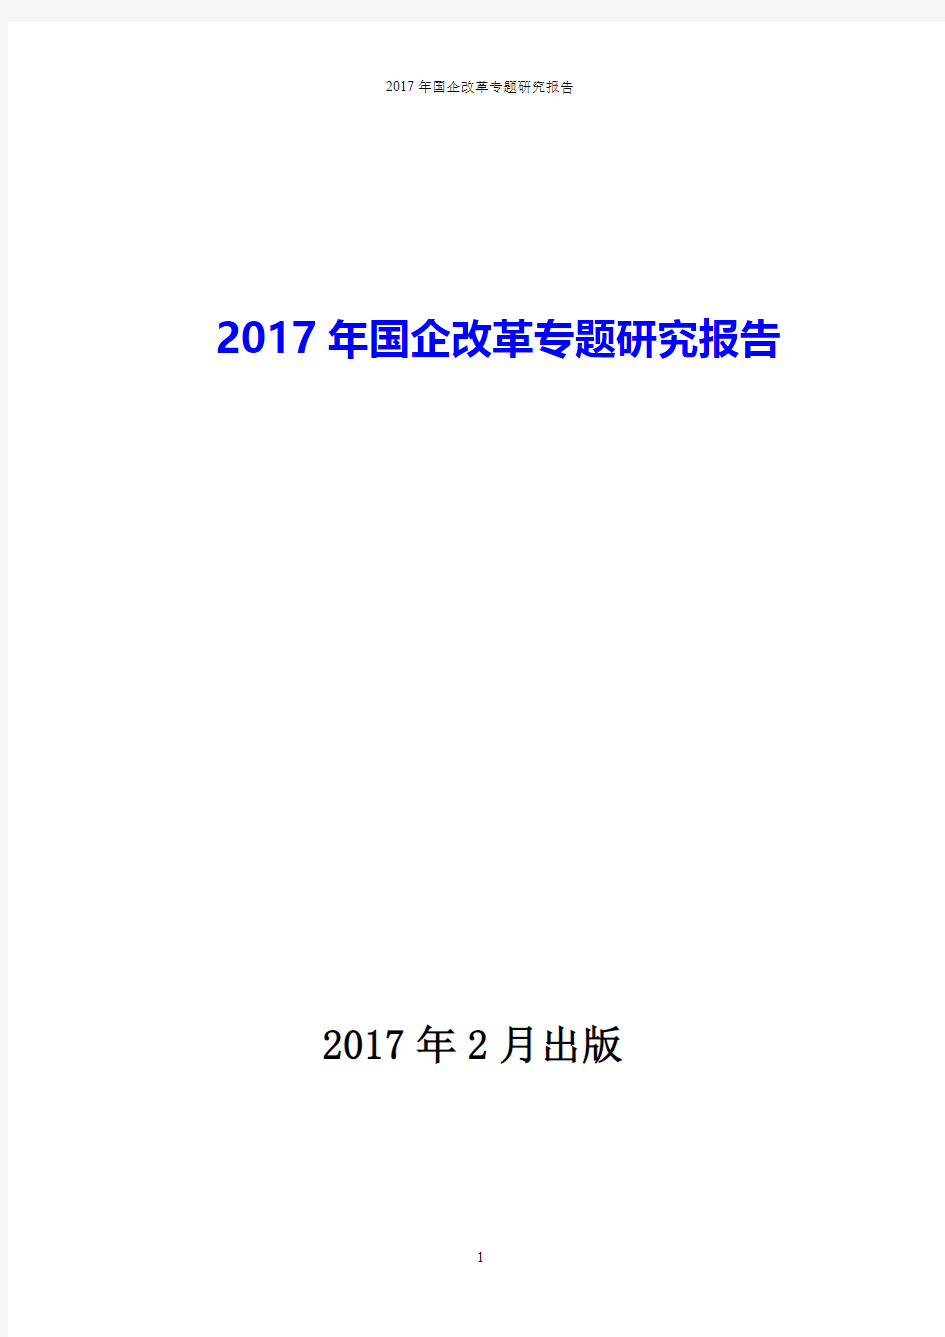 2017年国企改革专题研究报告(pdf版本)